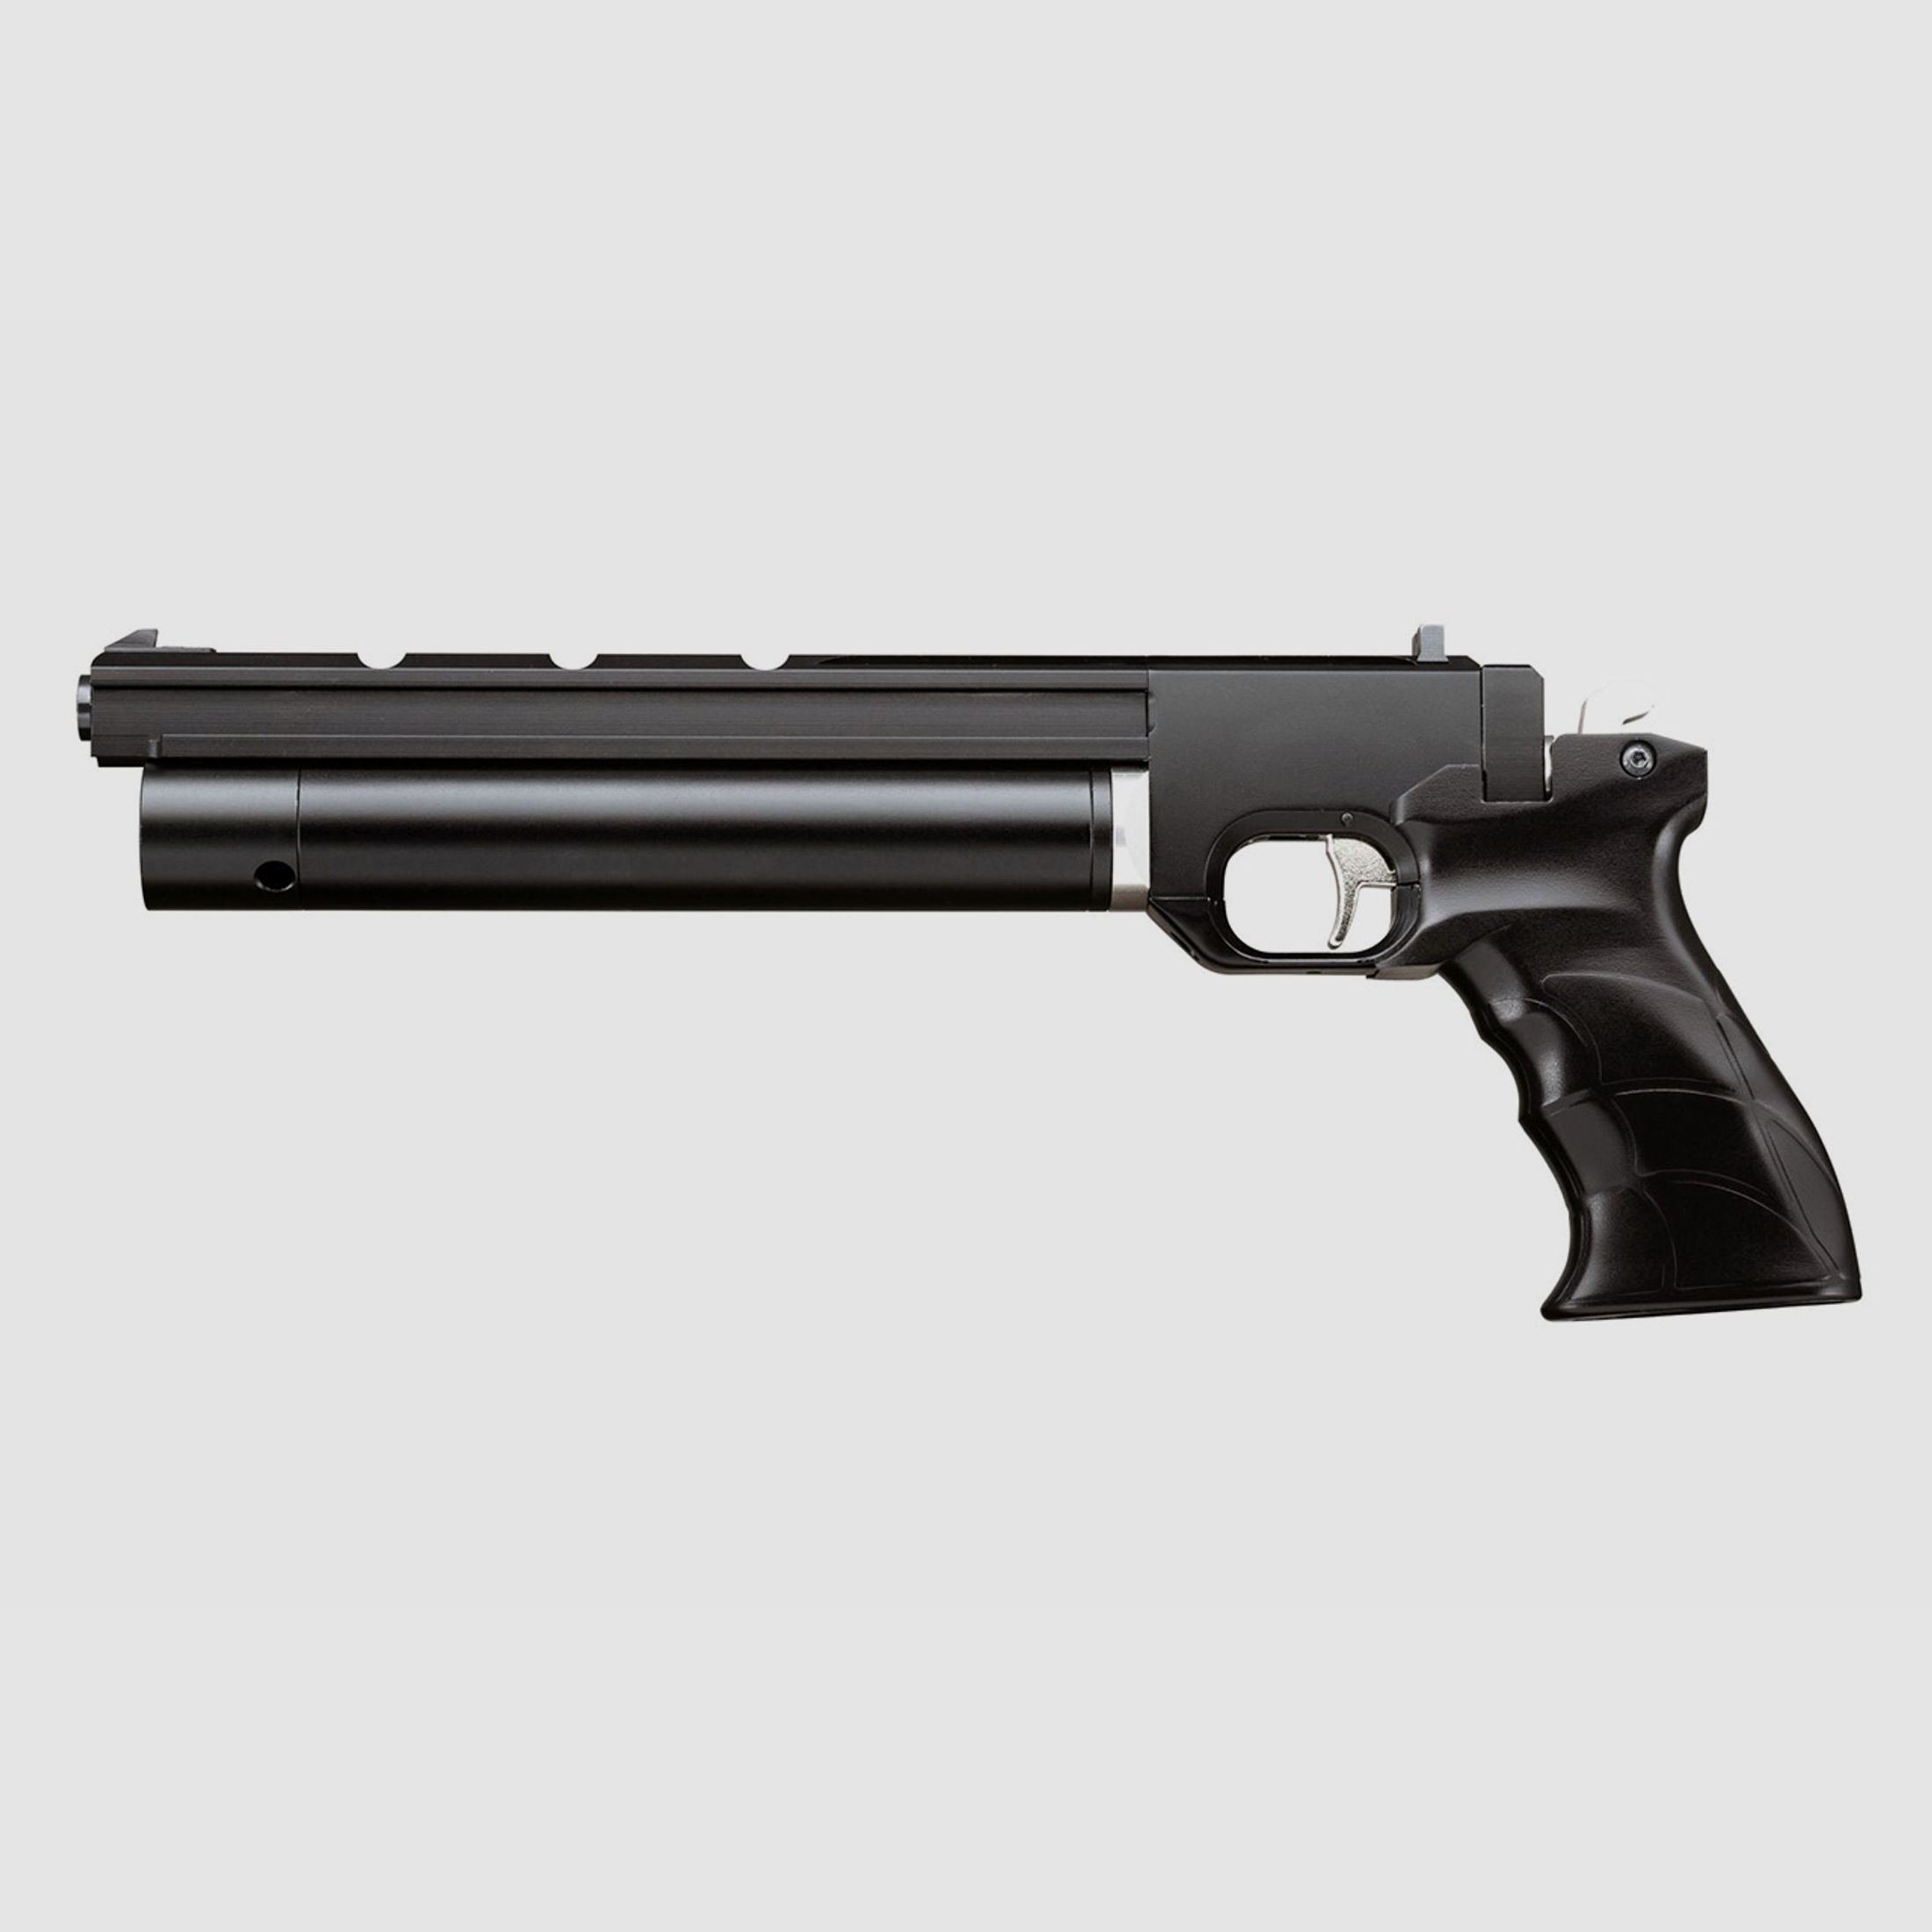 Pressluftpistole airmaX PP700S-A mit Regulator mit Regulator Kaliber 5,5 mm (P18)